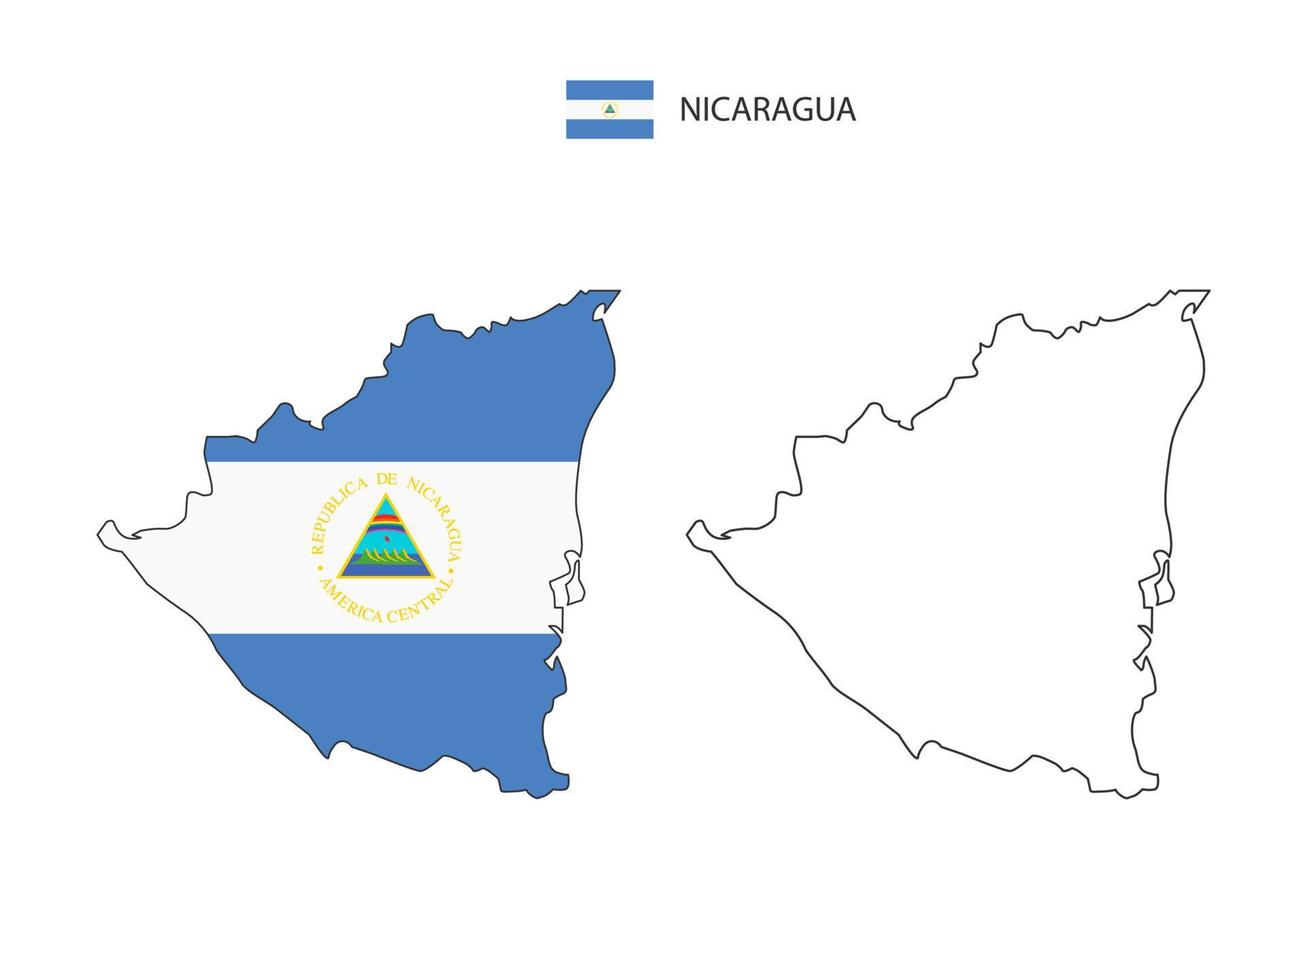 vetor da cidade do mapa da nicarágua dividido pelo estilo de simplicidade do contorno. tem 2 versões, versão de linha fina preta e cor da versão da bandeira do país. ambos os mapas estavam no fundo branco.